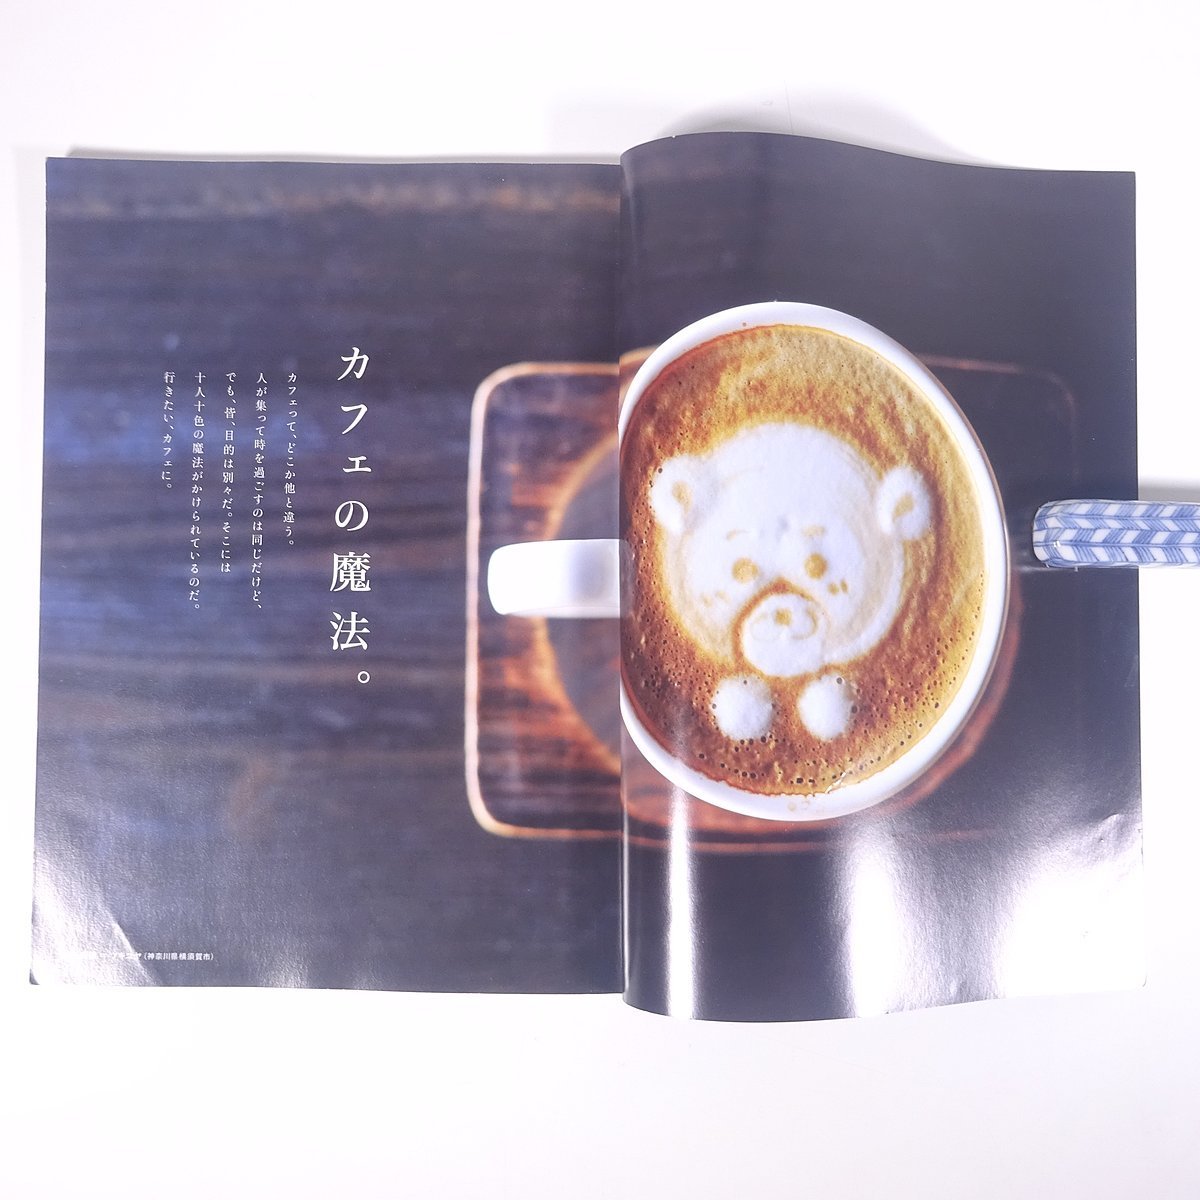 カフェの教科書 a cafe textbook. 客が絶えないカフェの秘密を教えます エイムック 枻出版社 2015 大型本 カフェ 喫茶店_画像5